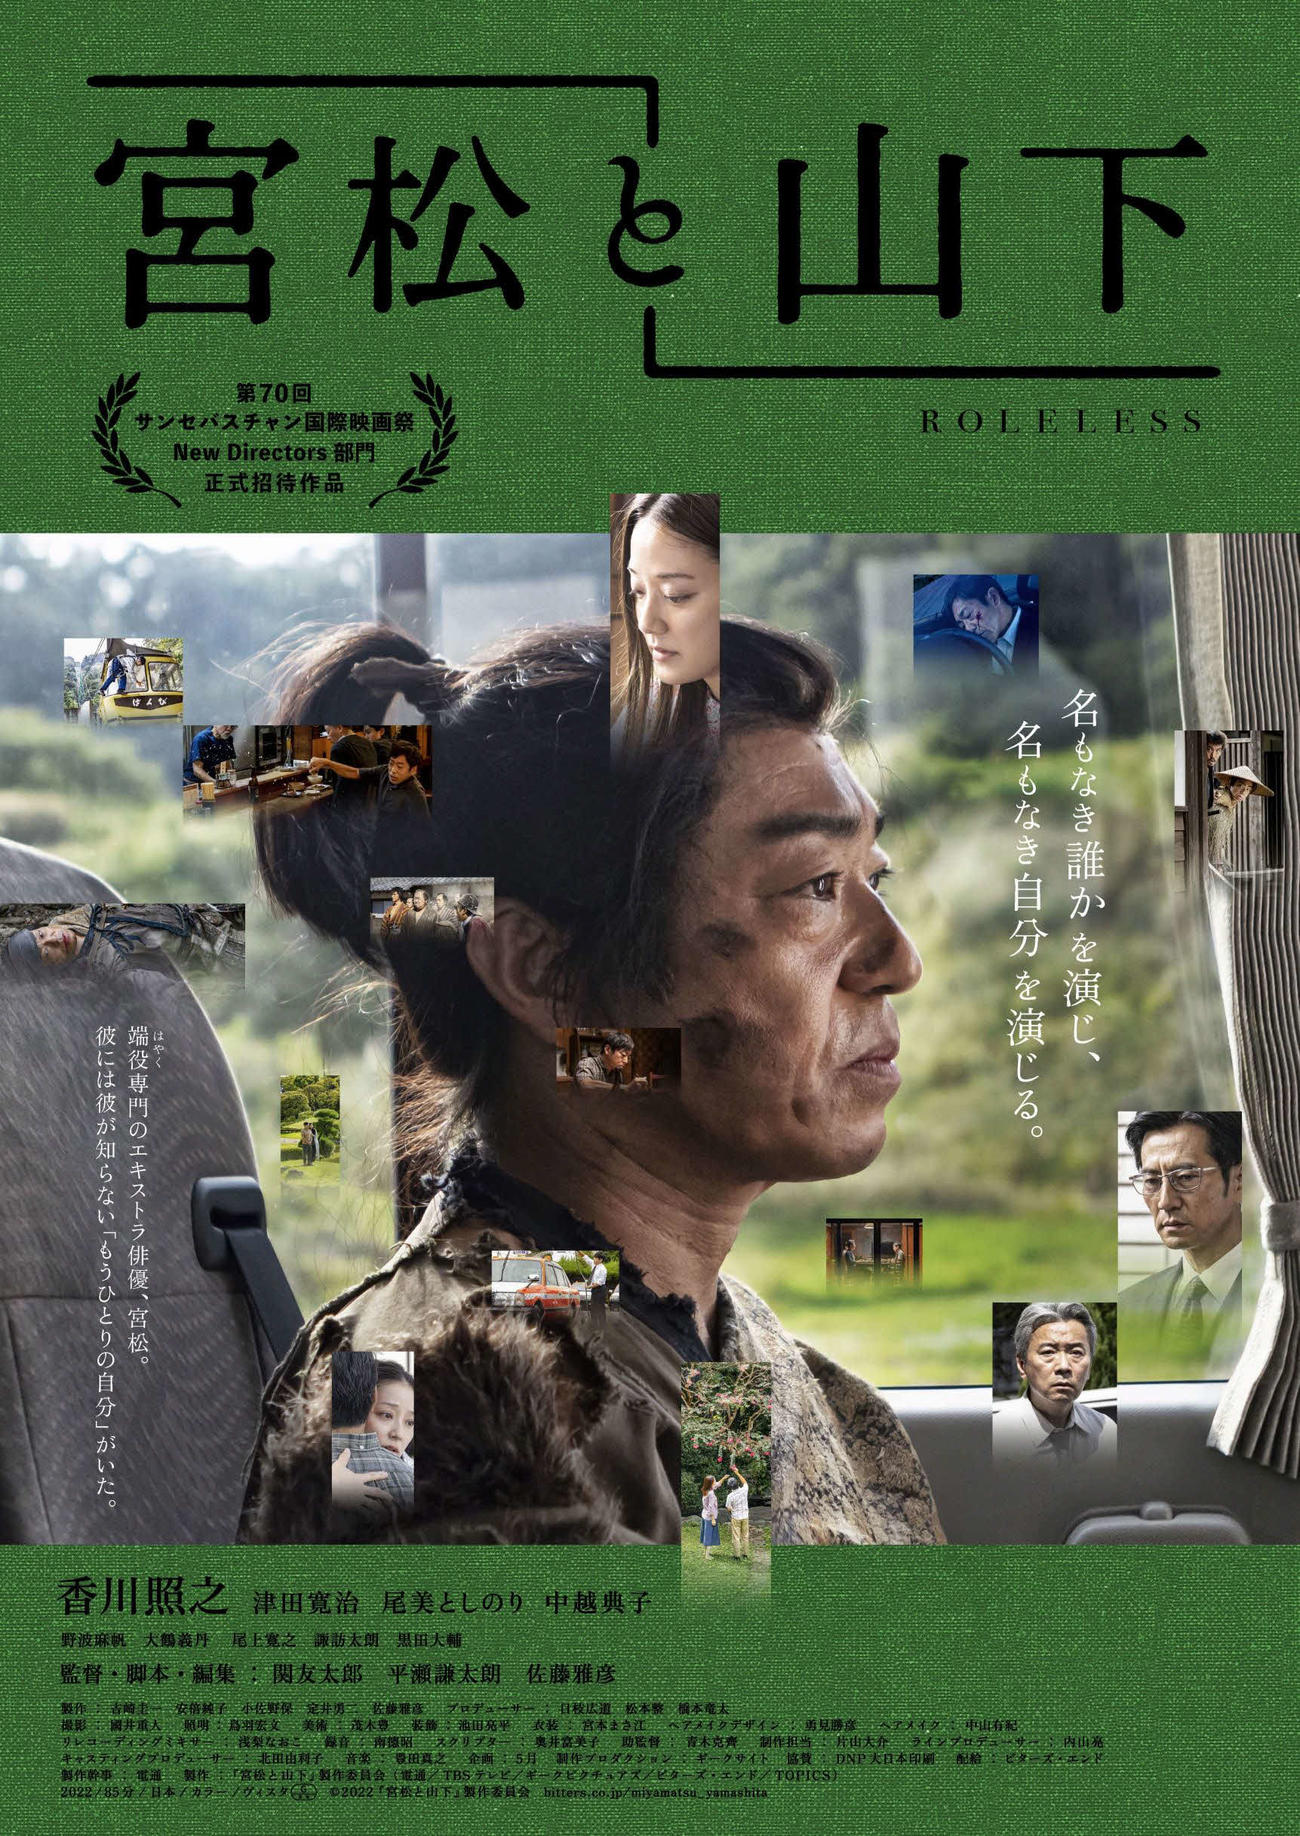 サンセバスチャン映画祭でワールドプレミア上映された香川照之主演映画「宮松と山下」のポスター